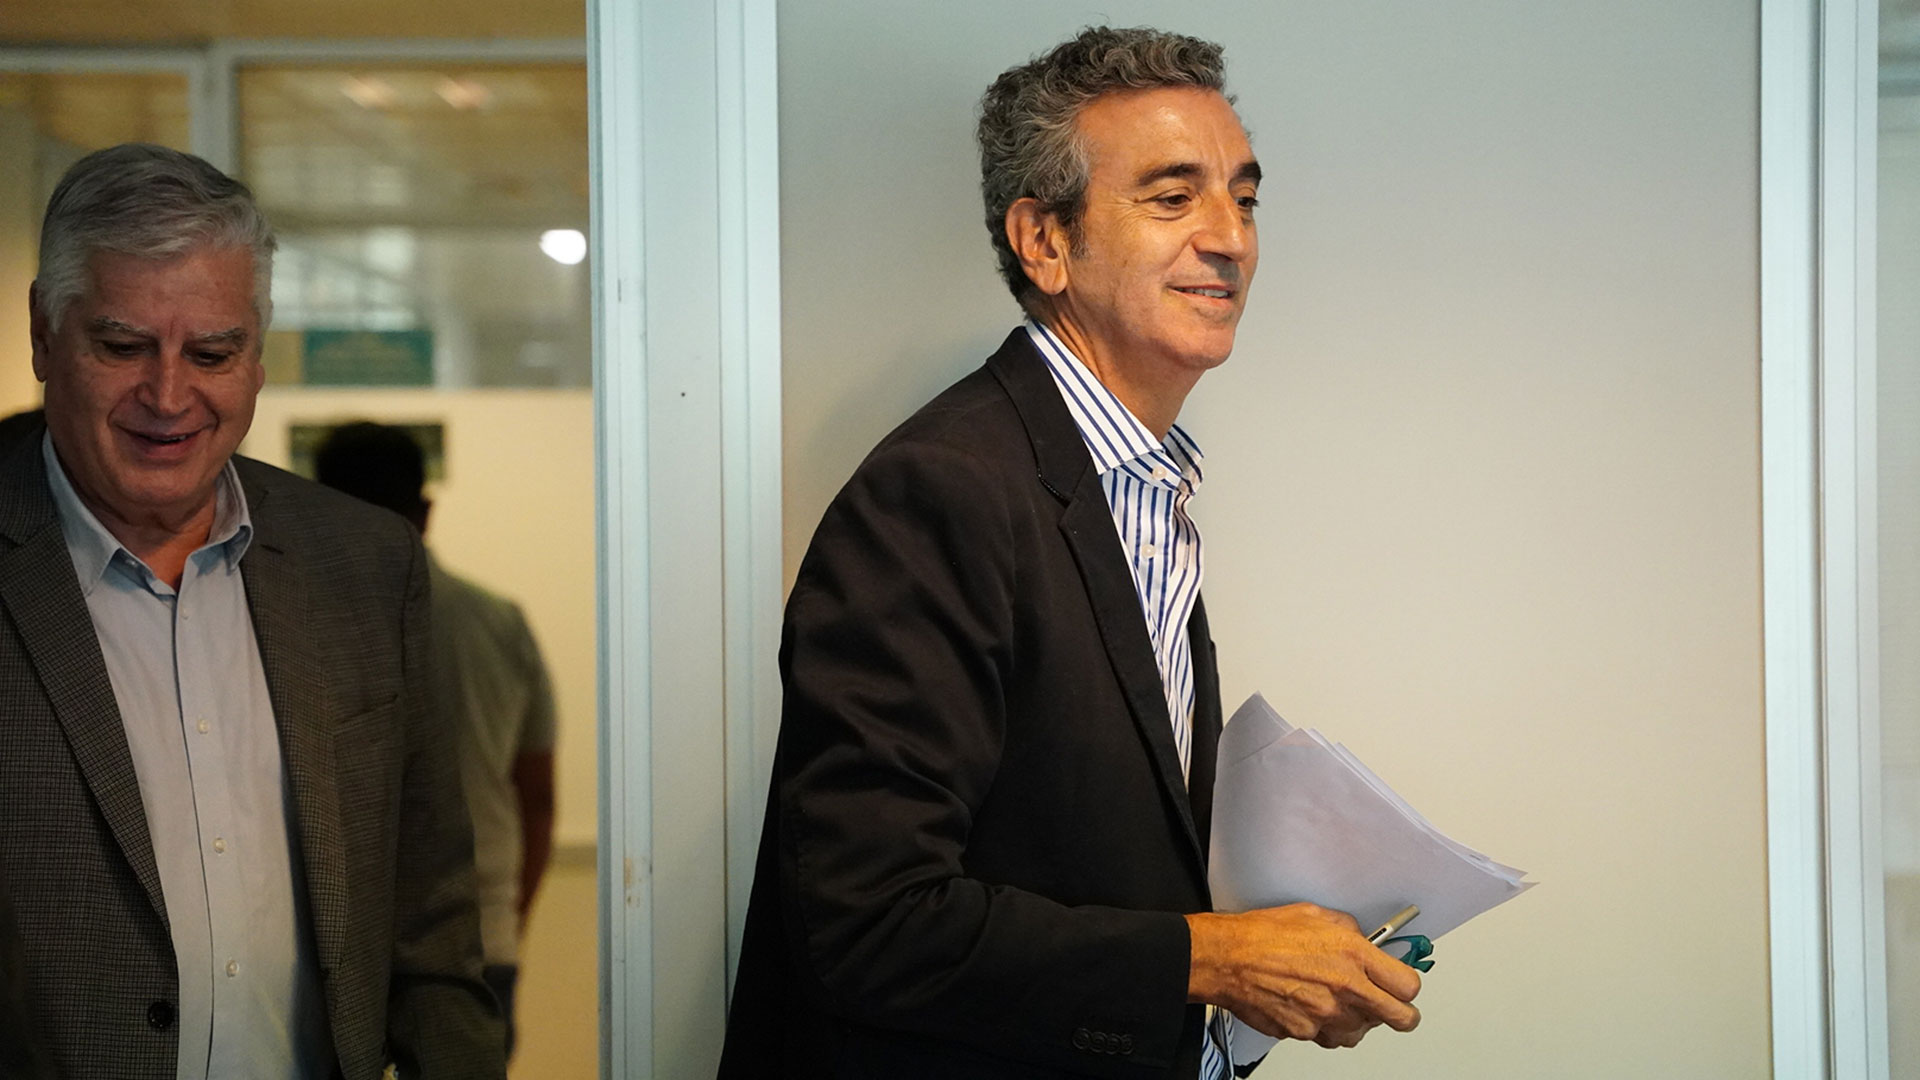 El diputado nacional Florencio Randazzo cruzó al presidente Alberto Fernández por su negativa a implementar cambios en el sistema de votación (Franco Fafasuli)